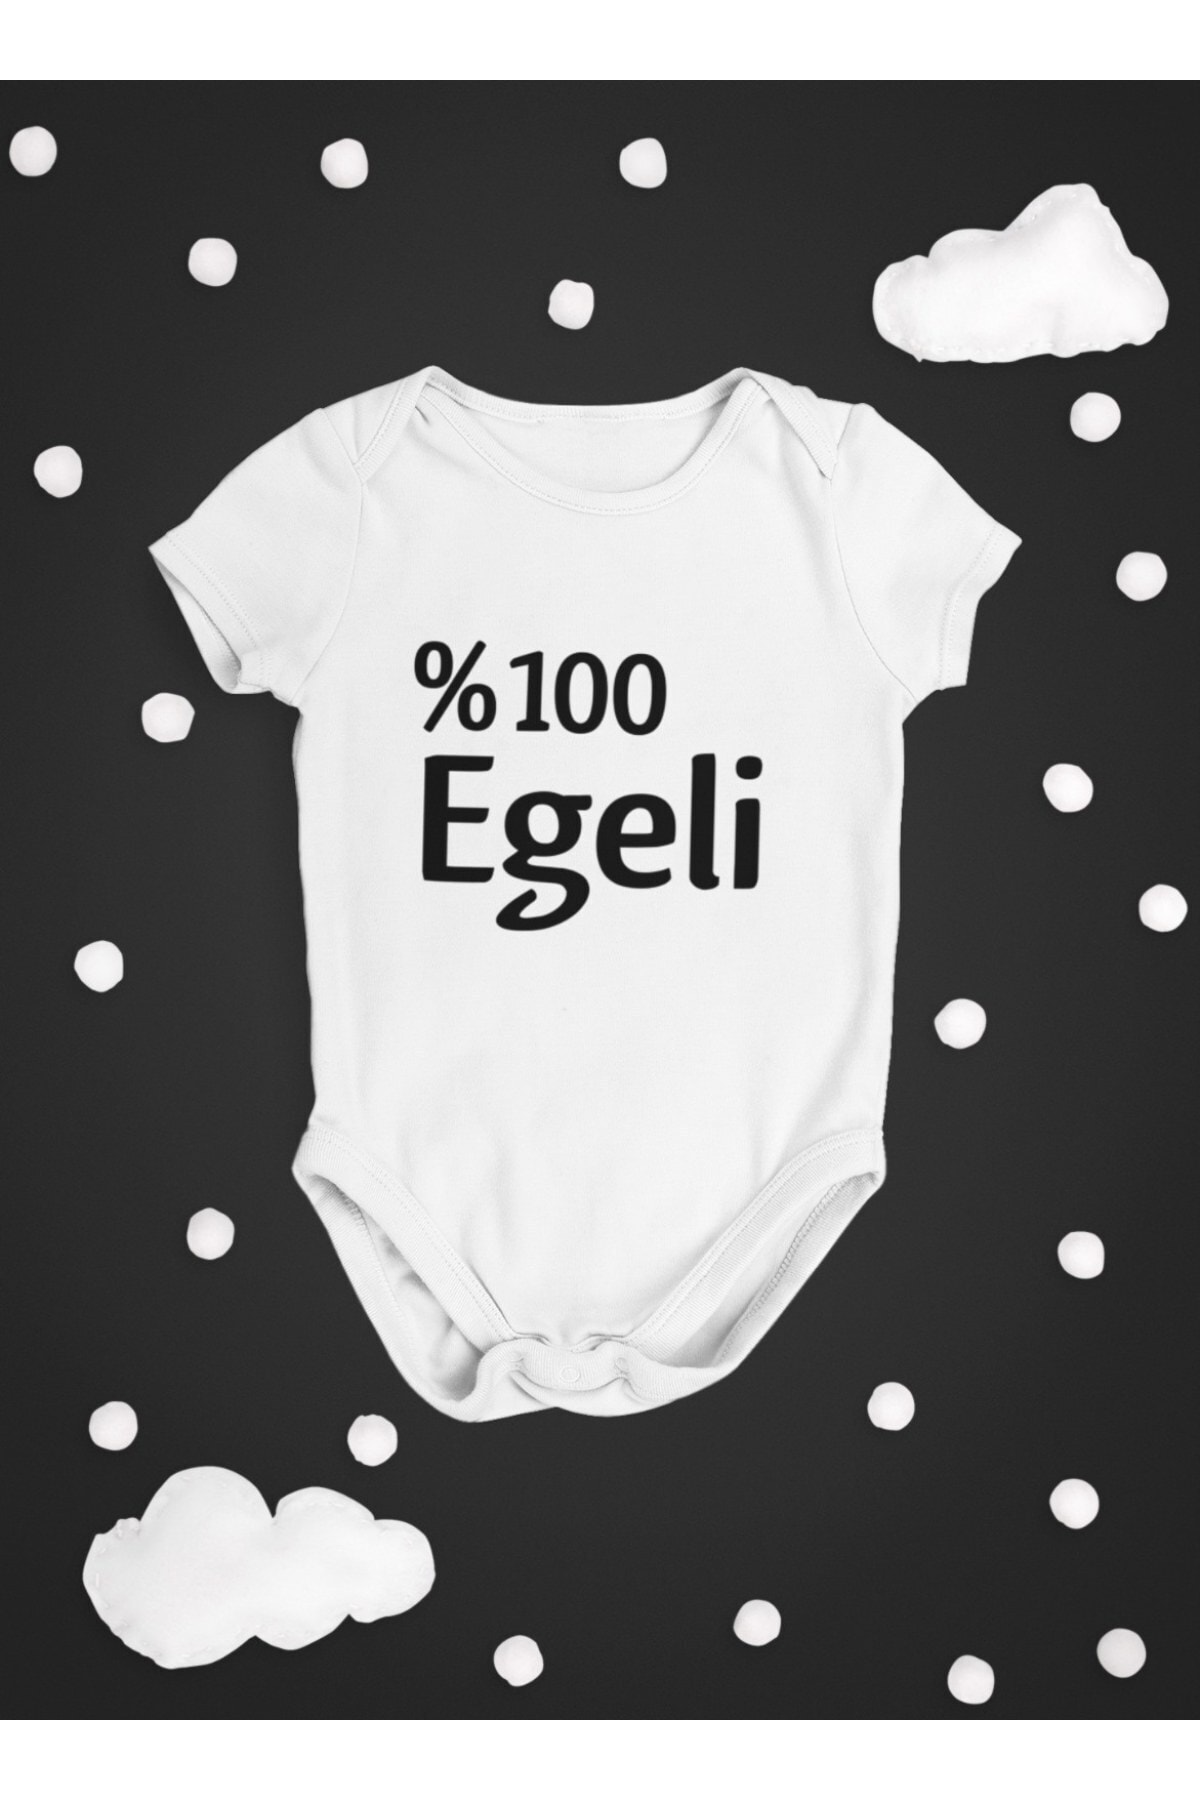 Ege Bazaar %100 Egeli Bbk79 (zıbın).